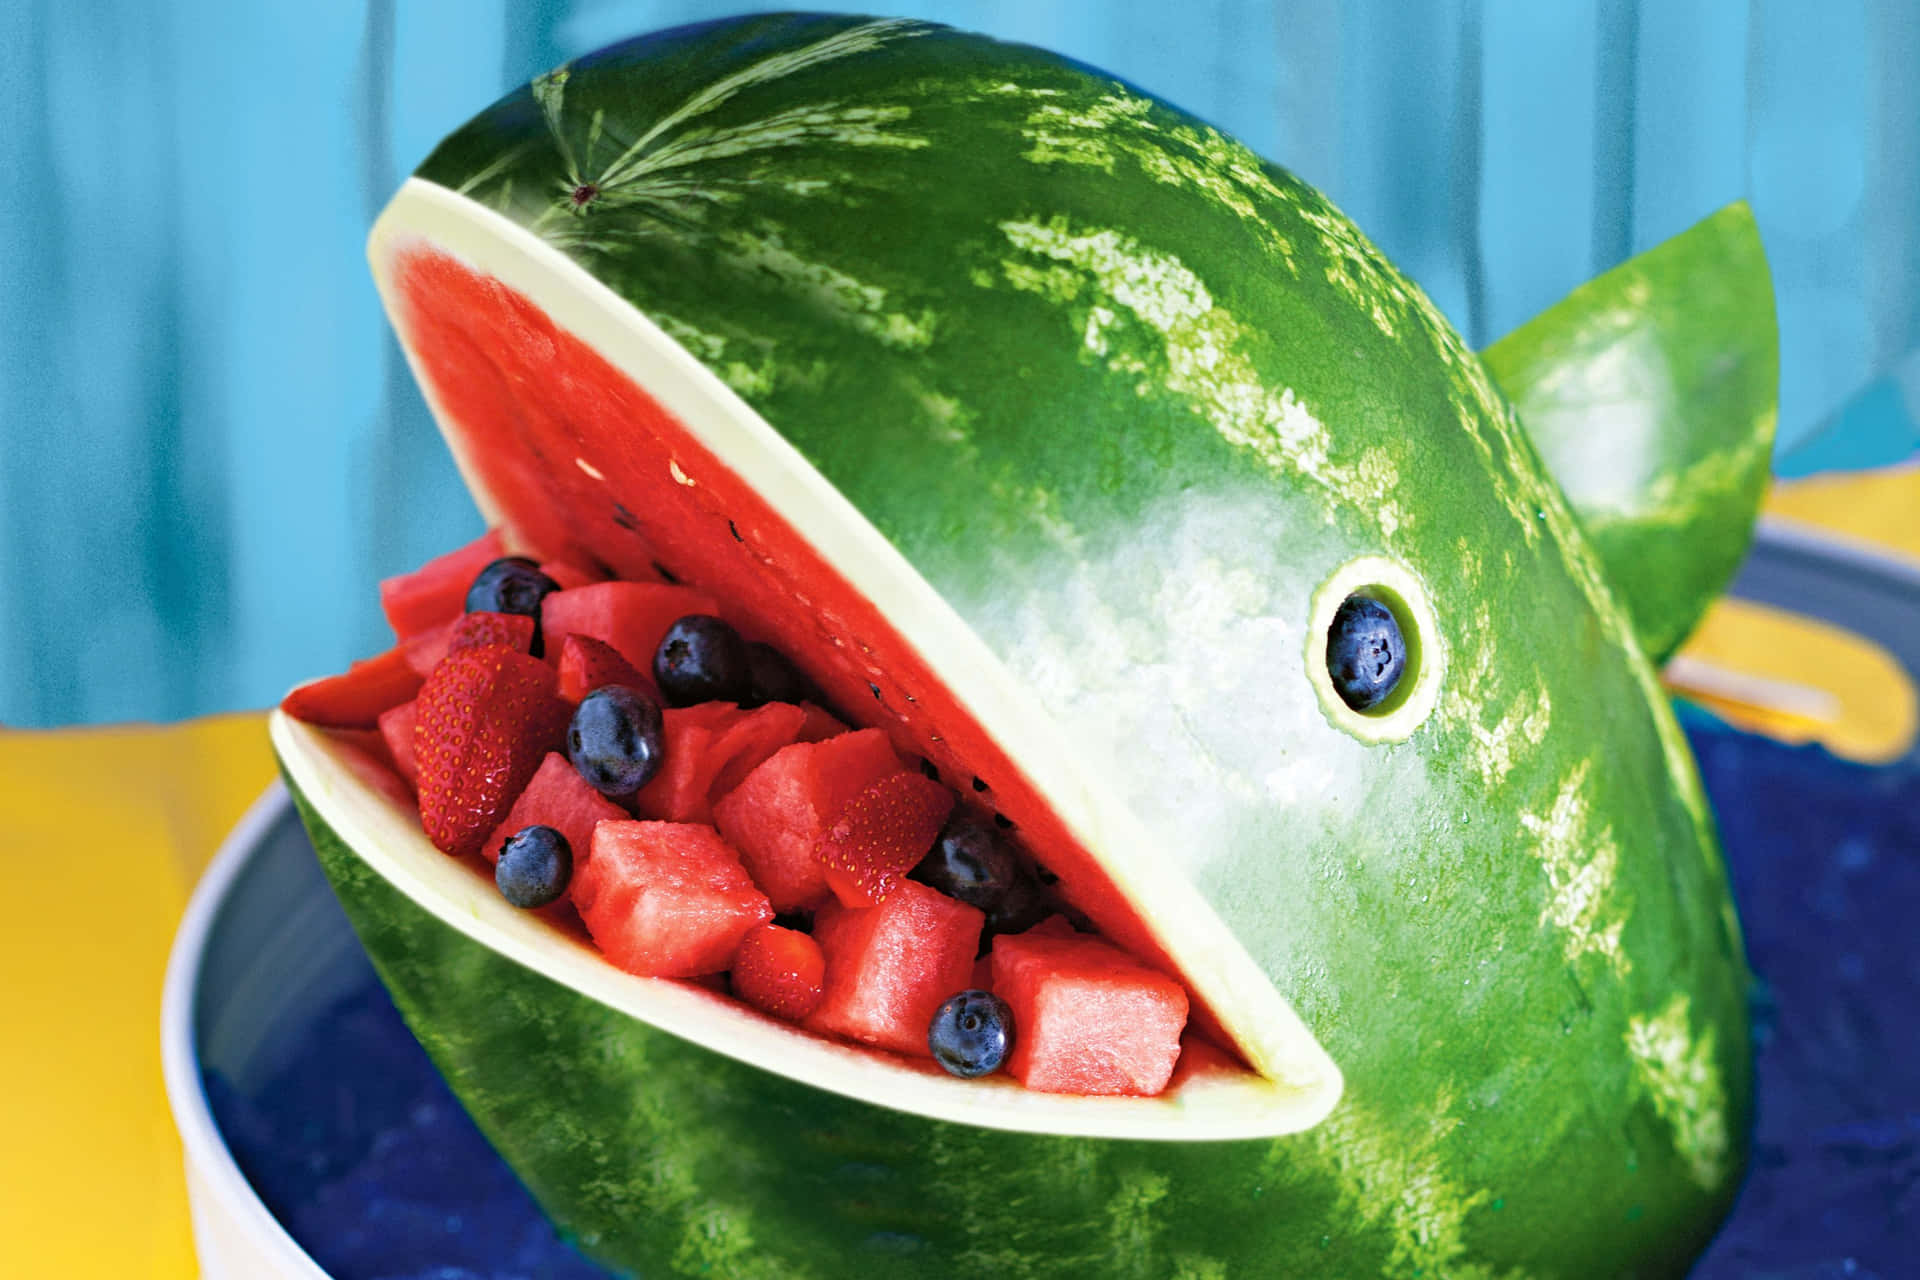 Aneinem Sommertag Eine Frische Wassermelone Genießen.